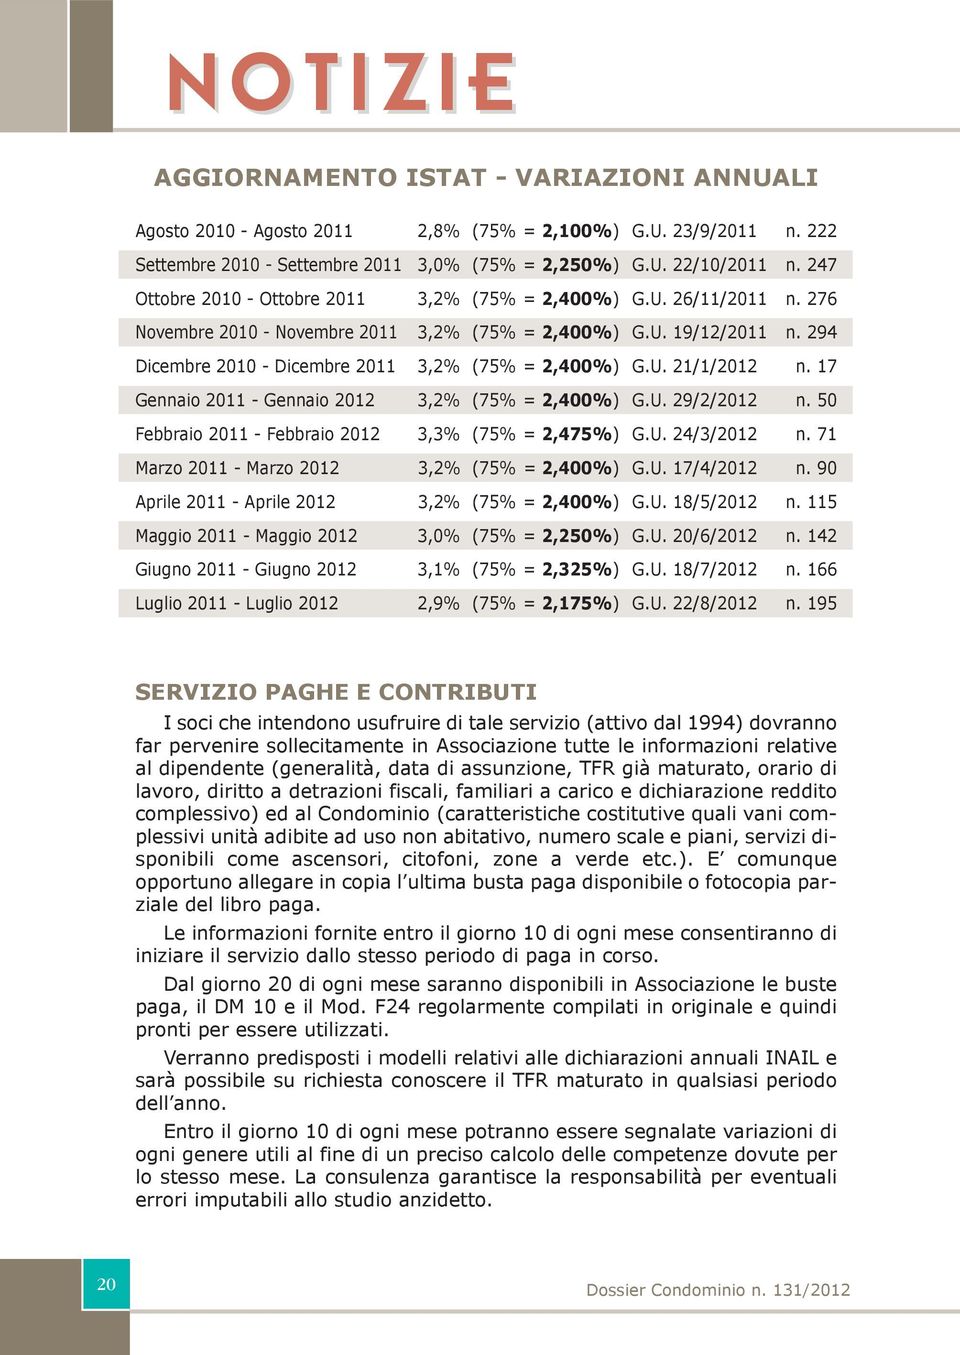 17 Gea 2011 - Gea 2012 3,2% (75% = 2,400%) G.U. 29/2/2012. 50 Febbra 2011 - Febbra 2012 3,3% (75% = 2,475%) G.U. 24/3/2012. 71 Marz 2011 - Marz 2012 3,2% (75% = 2,400%) G.U. 17/4/2012.